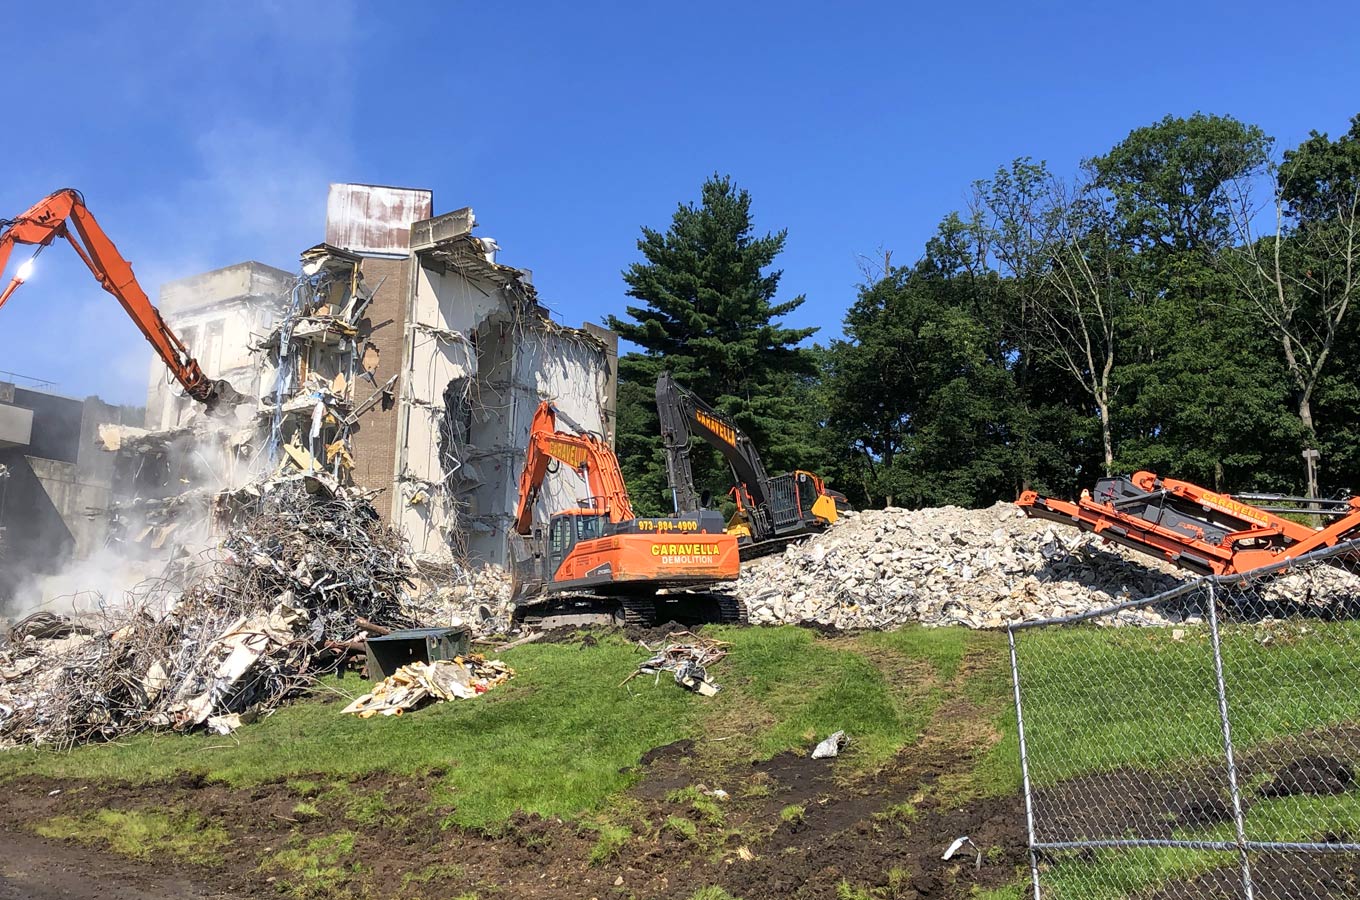 Demolition Services in Freehold, NJ 07728 | Caravella Demolition